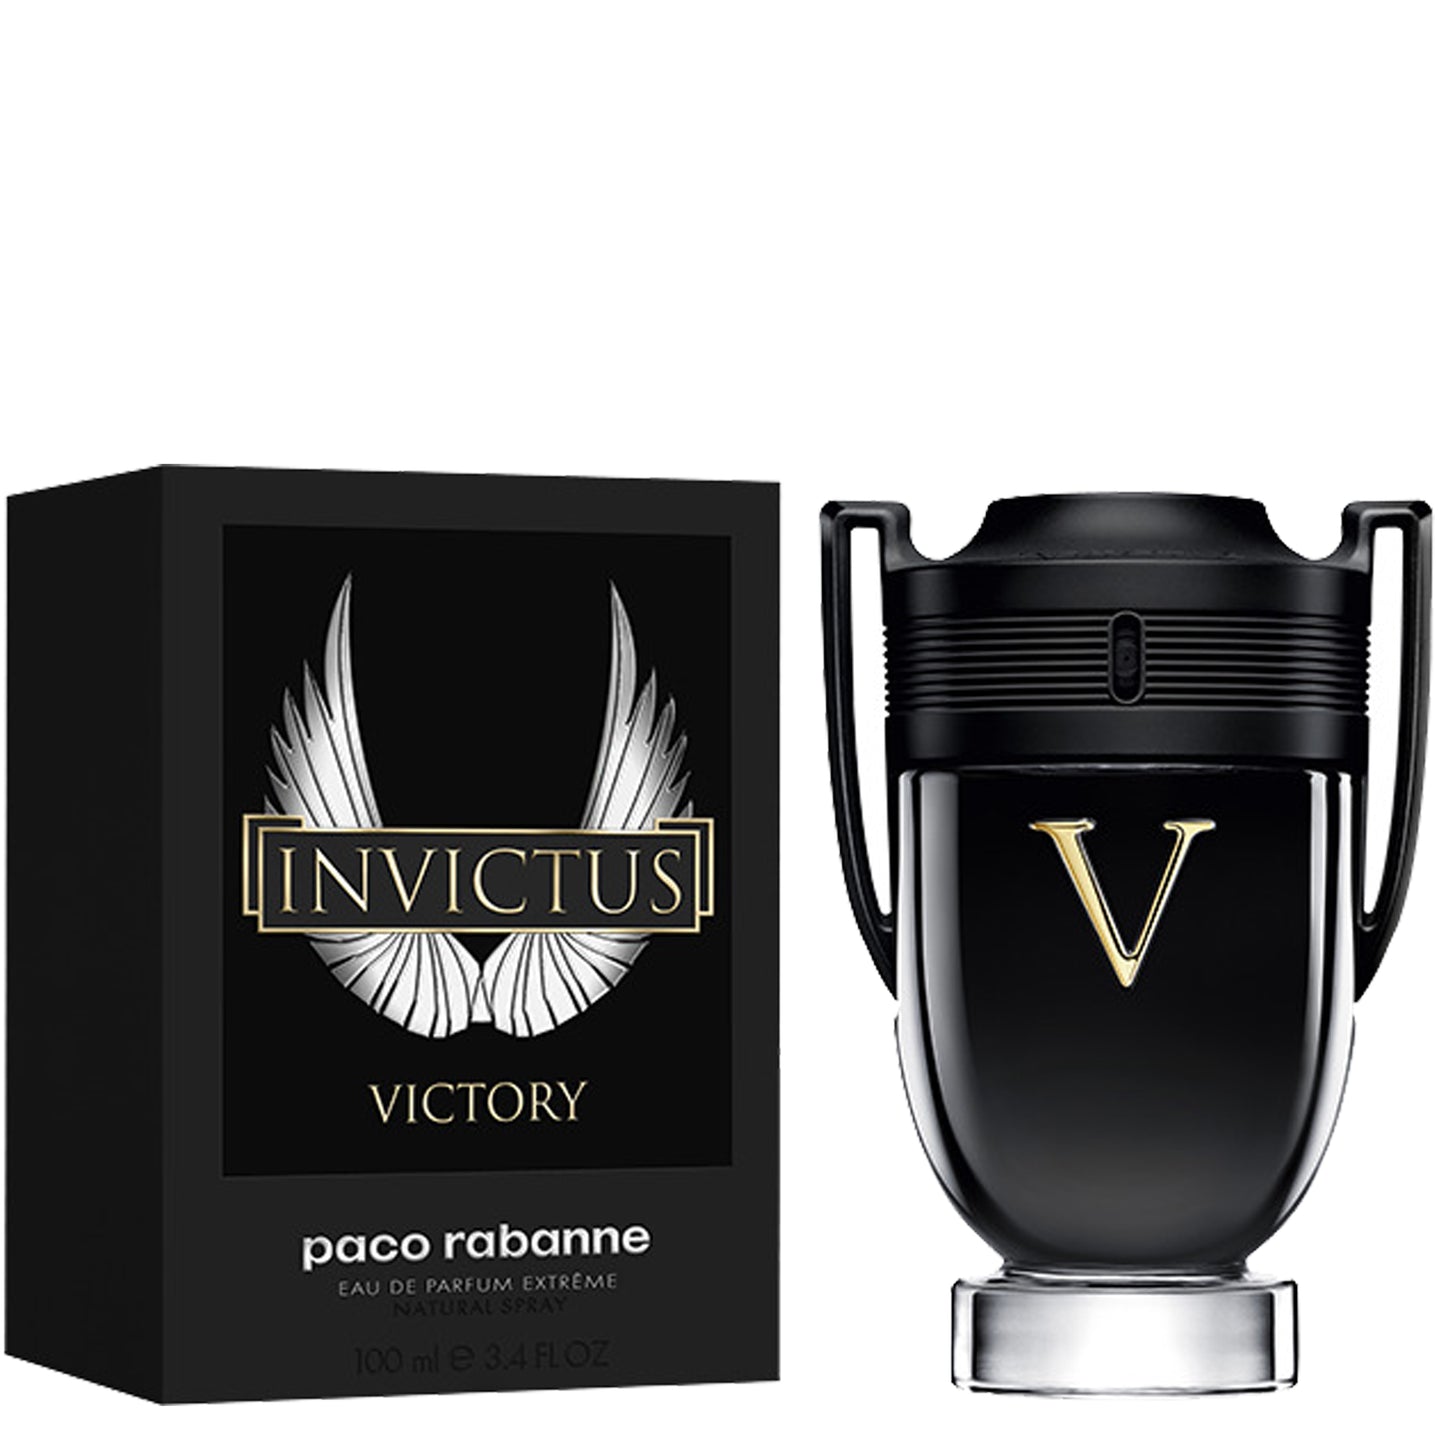 Paco Rabanne Invictus Victory Eau de Parfum